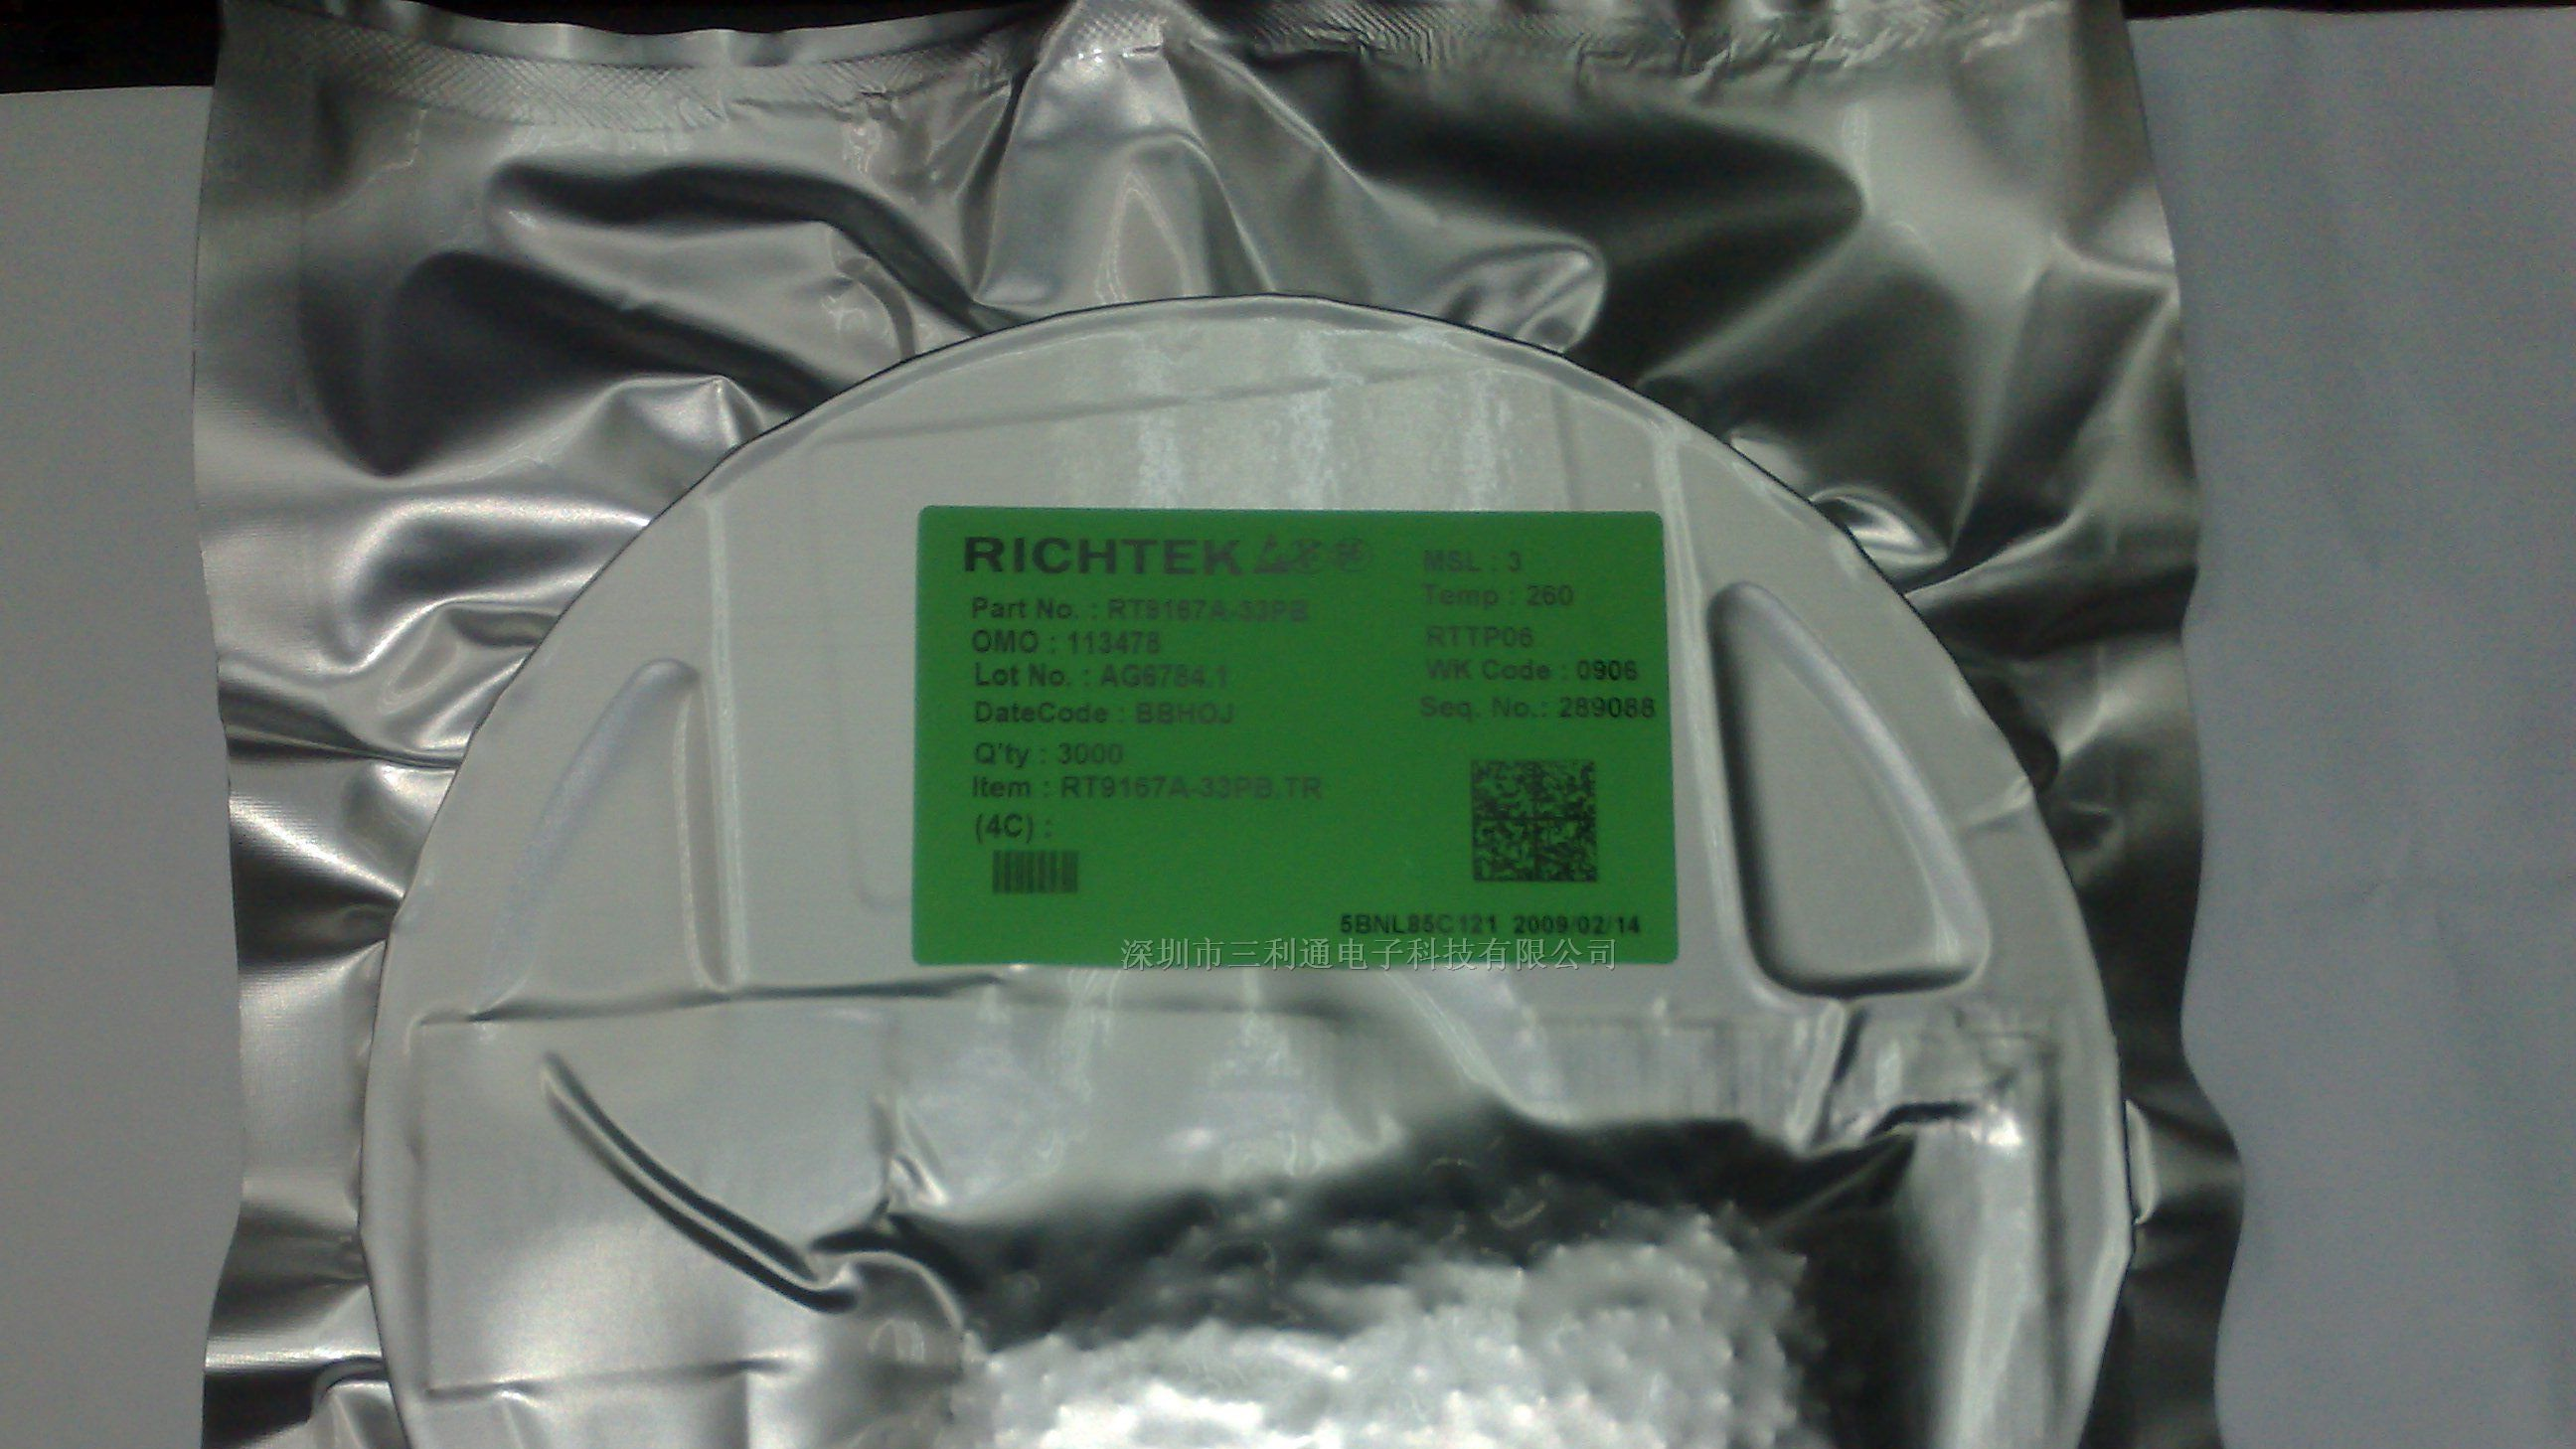 供应：RT9167A-33PB电源IC（RICHTEK）系列产品。